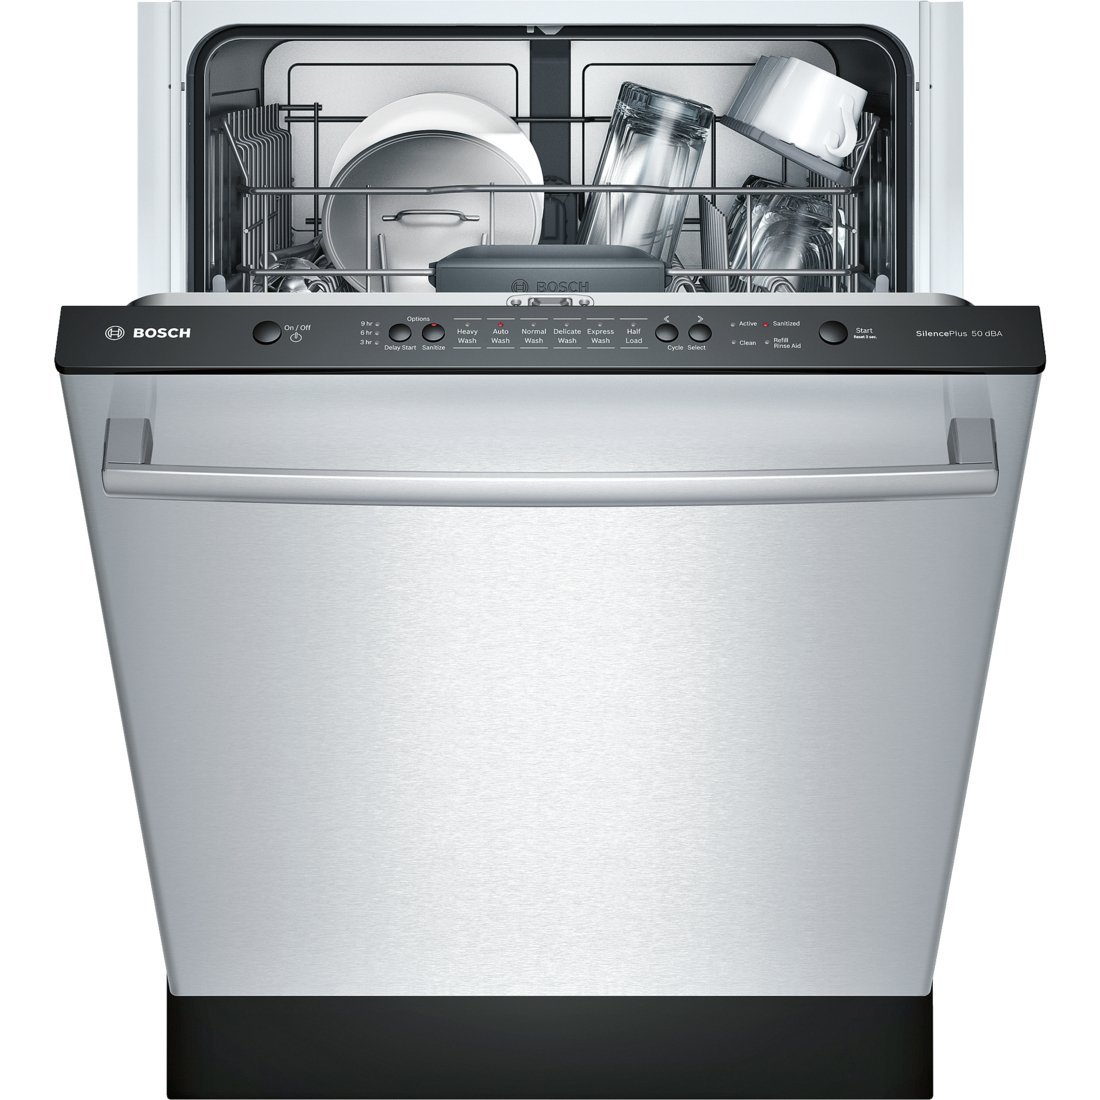  Bosch SHX3AR75UC Ascenta 24 'Wide Полностью встраиваемая встраиваемая посудомоечная машина с 6 циклами стирки 14 настроек...